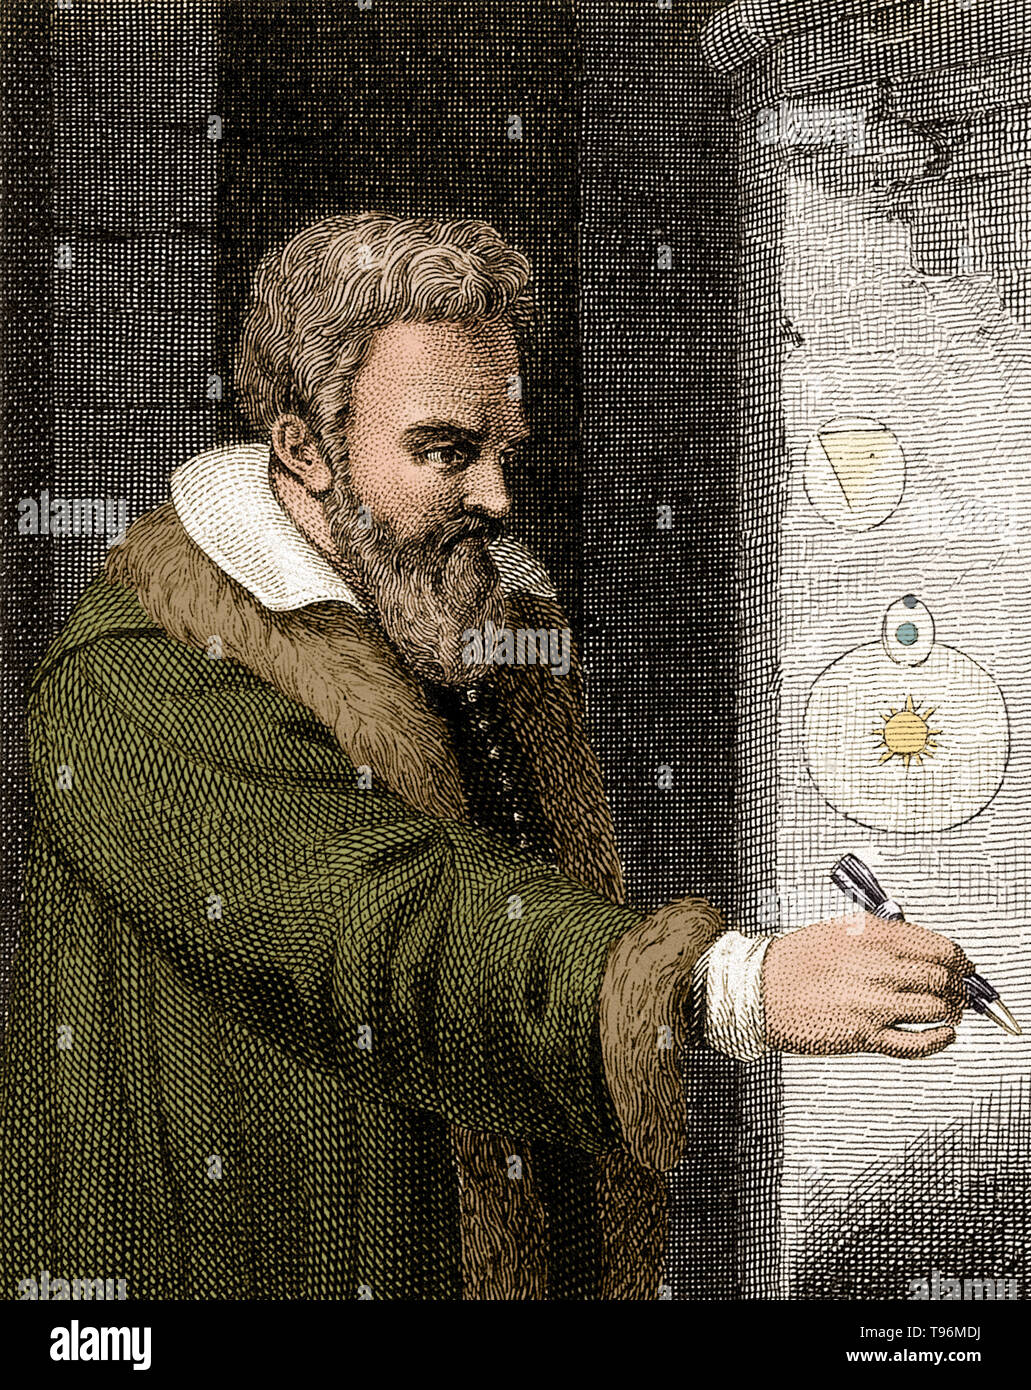 Galileo Galilei (15 de febrero de 1564 - 8 de enero de 1642) fue un físico italiano, matemático, astrónomo y filósofo, quien desempeñó un papel importante en la revolución científica. Sus logros incluyen la mejora del telescopio, importantes observaciones astronómicas y soporte para Copernicanism. Él descubrió las montañas de la luna, las cuatro grandes lunas de Júpiter y de numerosas estrellas tenues. Estudió el movimiento del péndulo y encontró que los columpios tienen un período de tiempo constante. Foto de stock